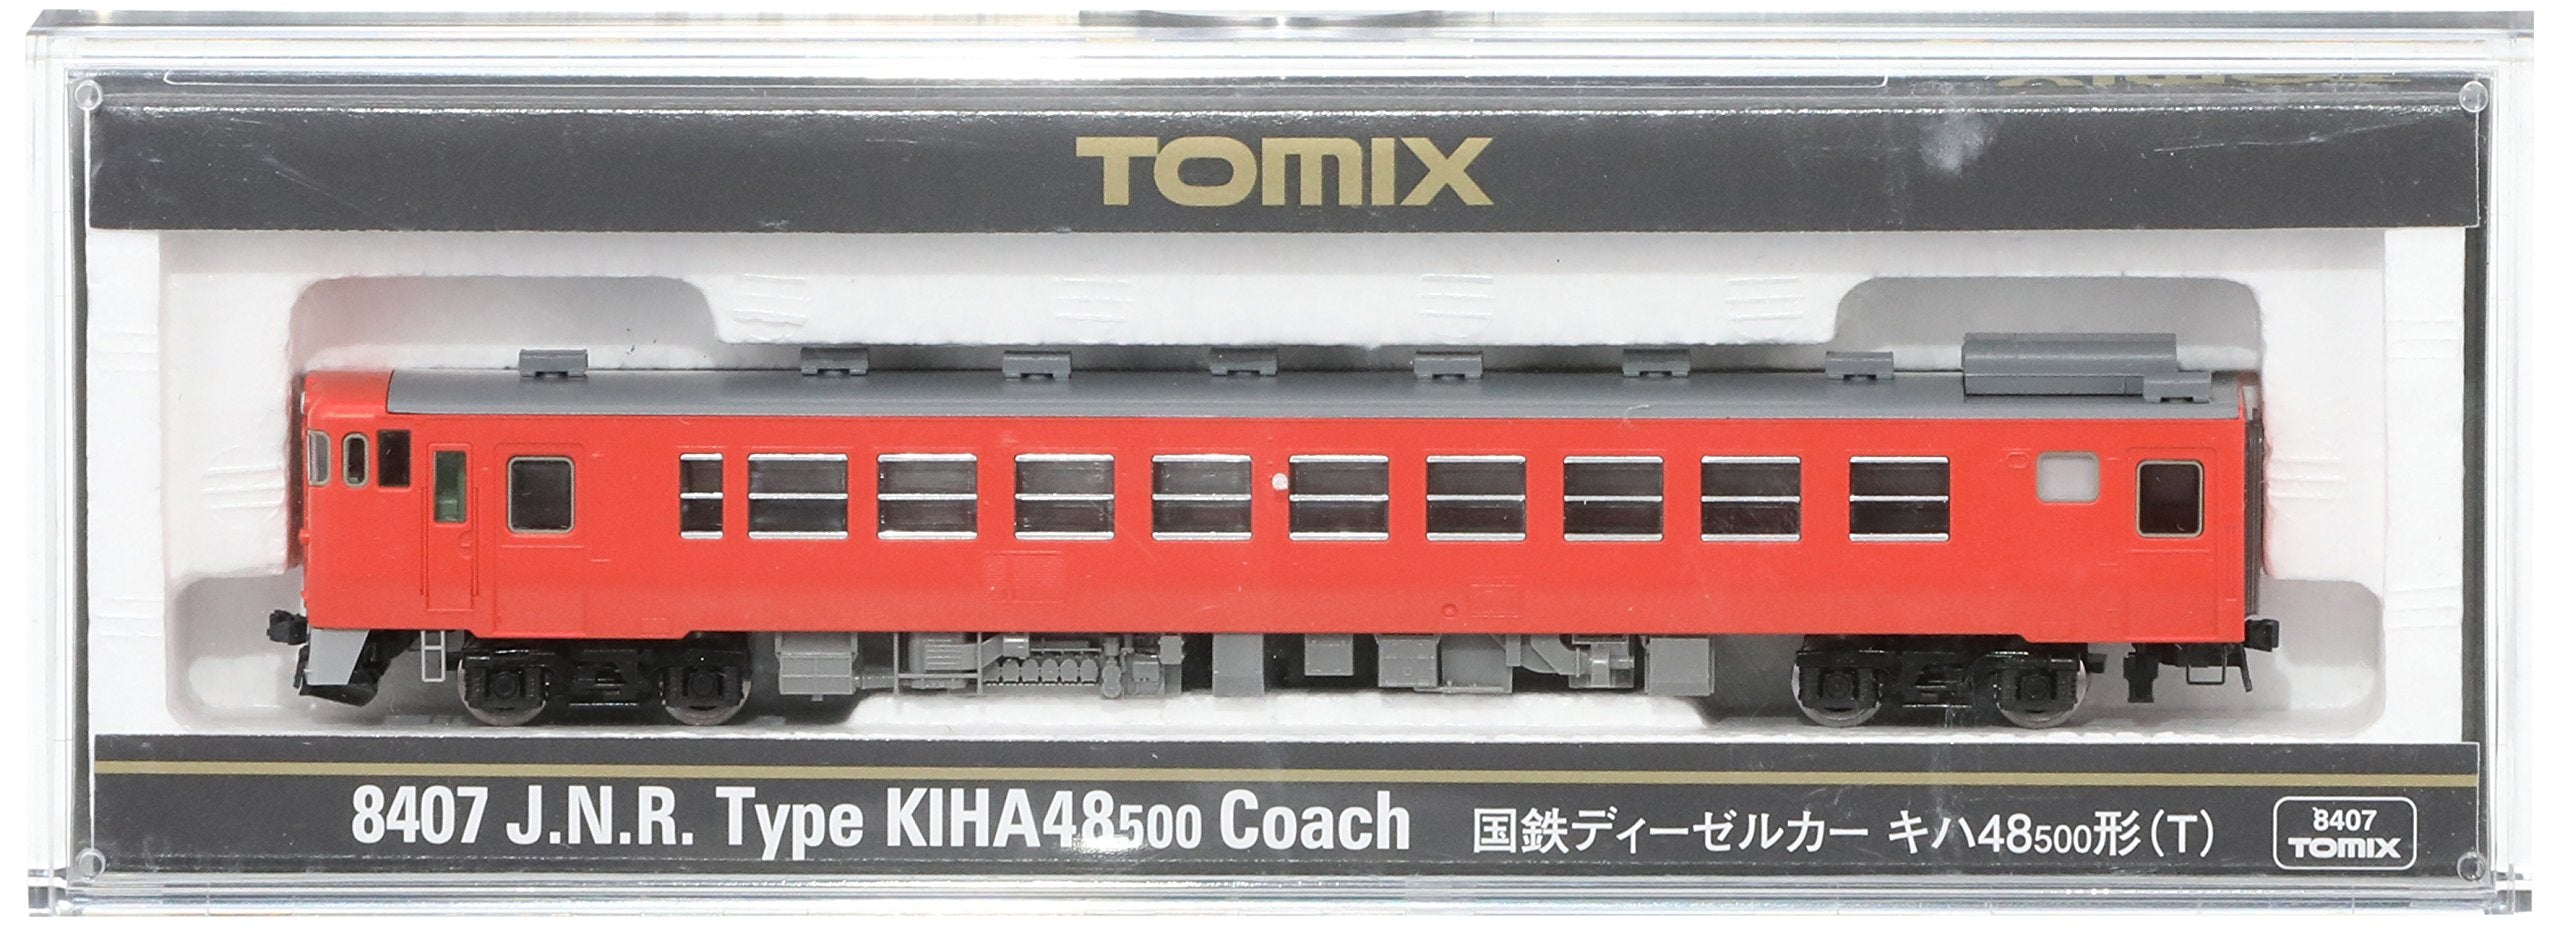 Tomytec Tomix N Gauge Kiha48-500 T 8407 Diesel Railway Model Car